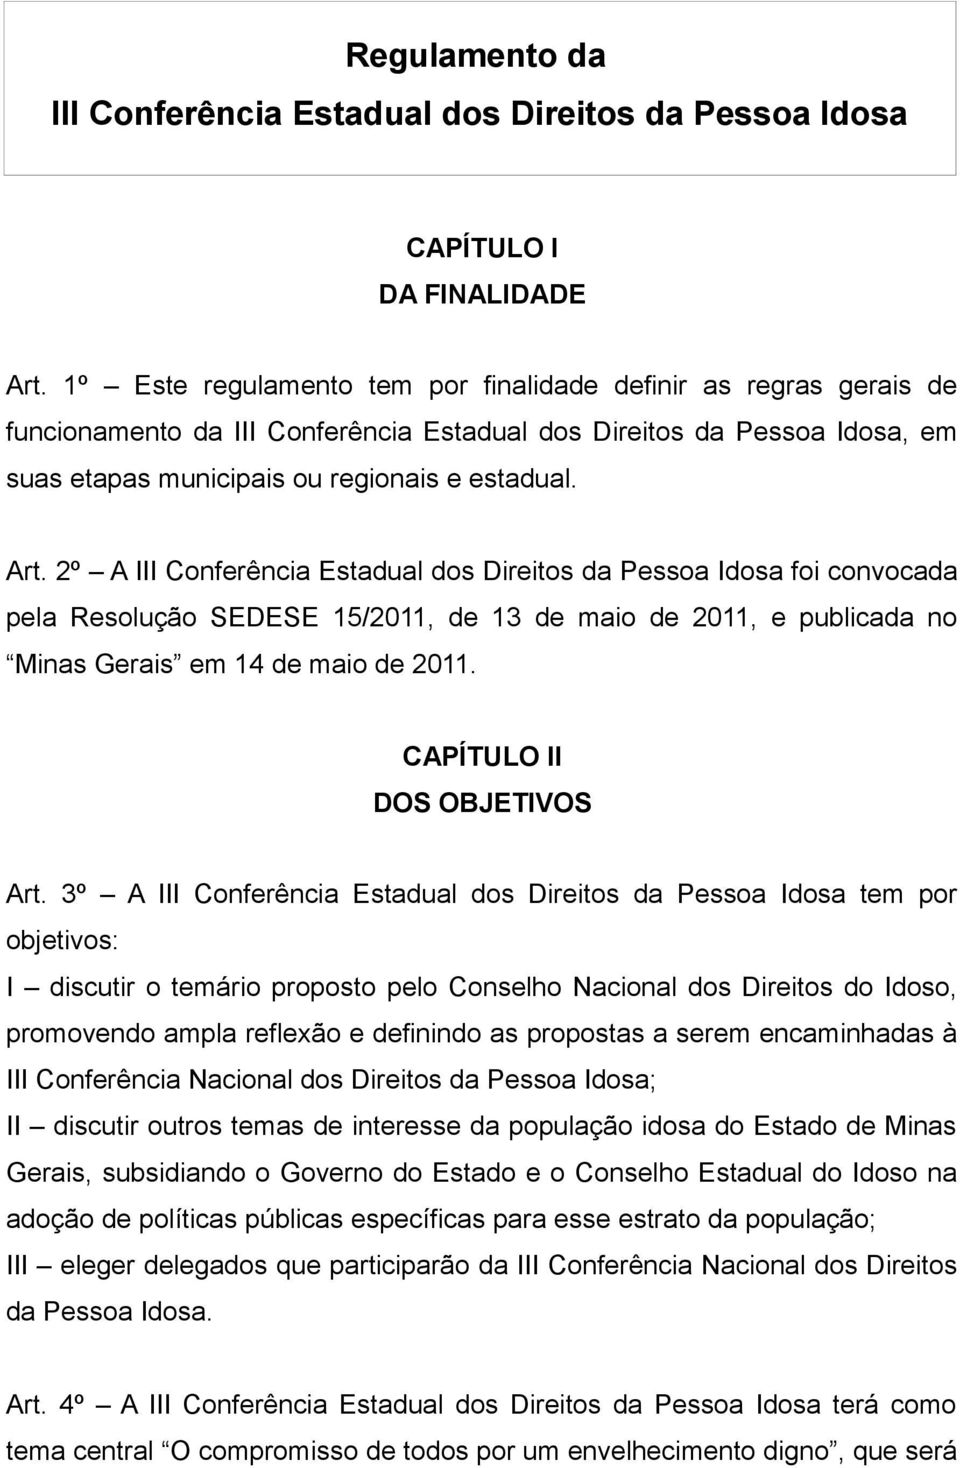 2º A III Conferência Estadual dos Direitos da Pessoa Idosa foi convocada pela Resolução SEDESE 15/2011, de 13 de maio de 2011, e publicada no Minas Gerais em 14 de maio de 2011.